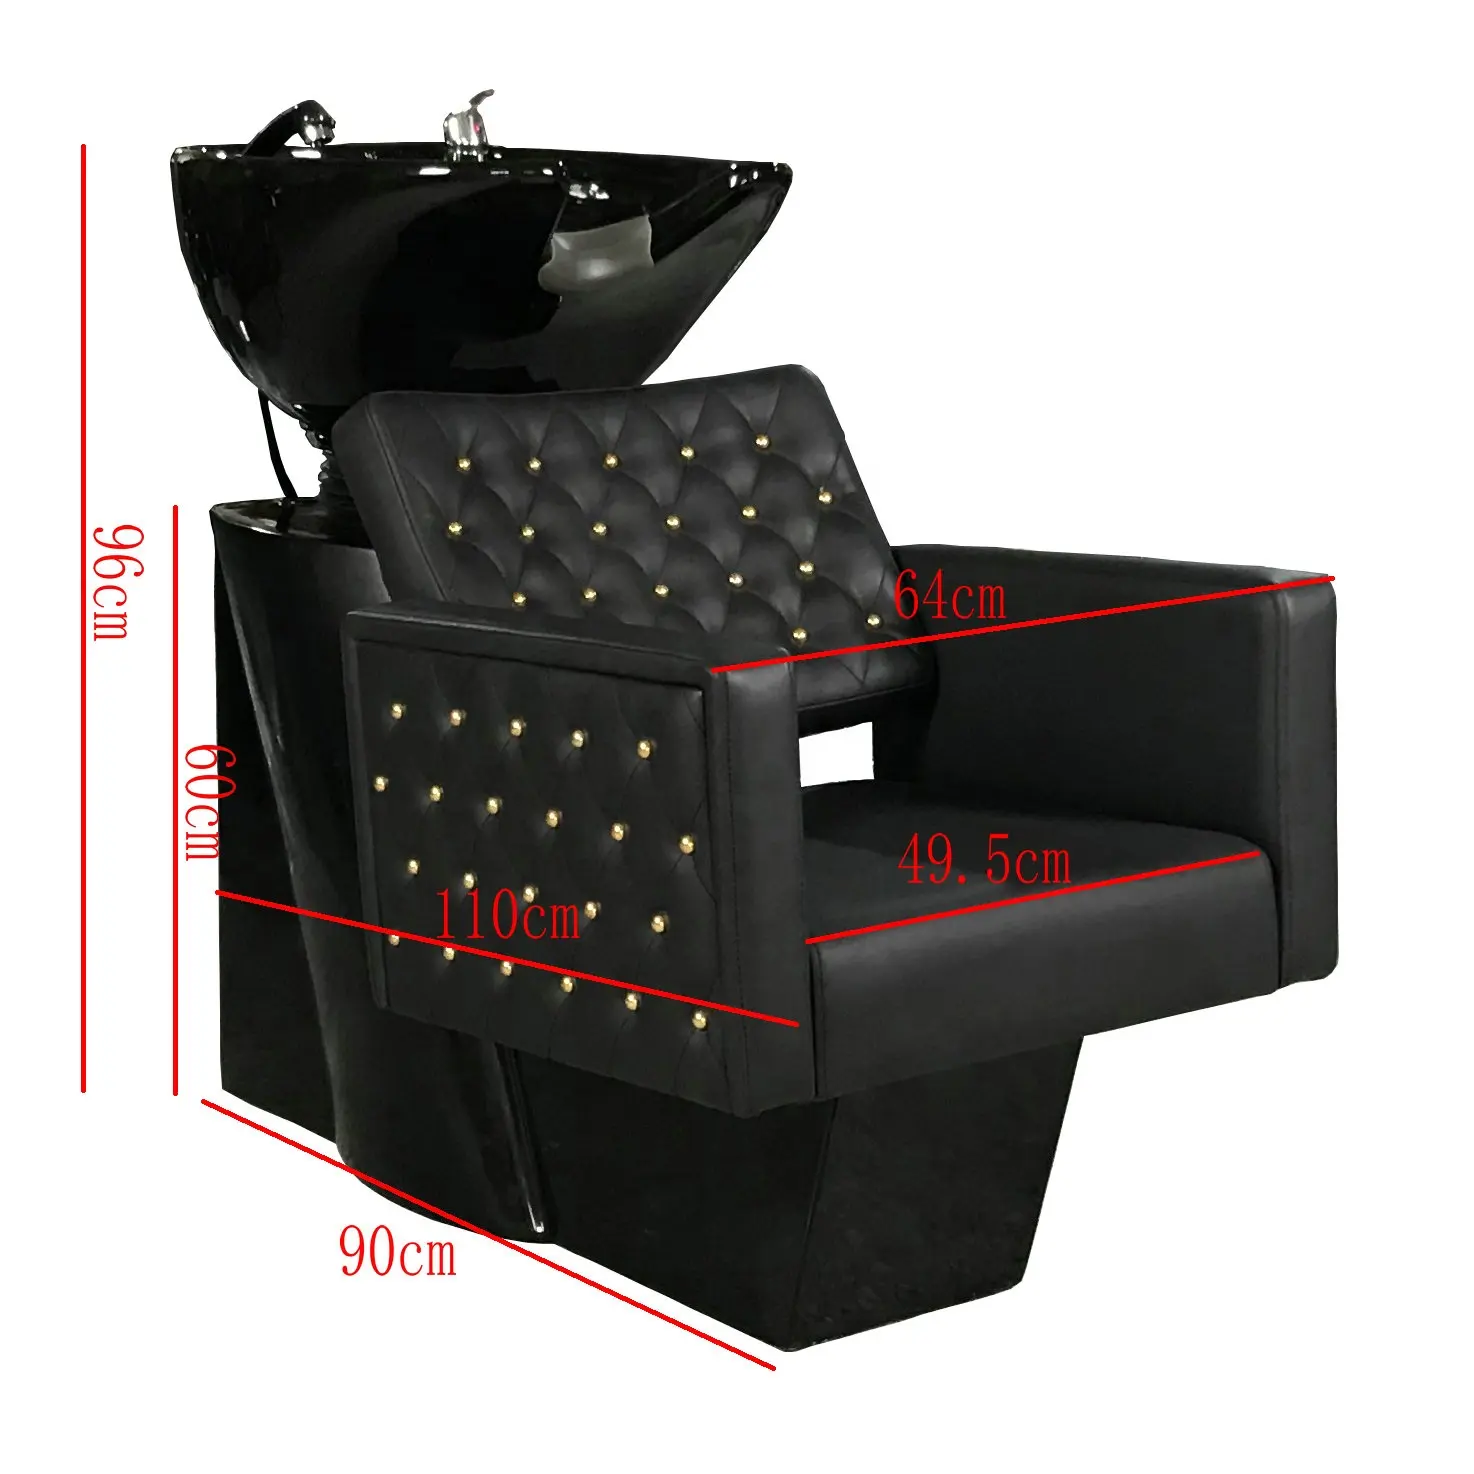 새로운 디자인 도매 블랙 및 골드 뷰티 살롱 이발소 가구 헤어 워시 싱크 백 워시 단위 그릇 살롱 샴푸 의자